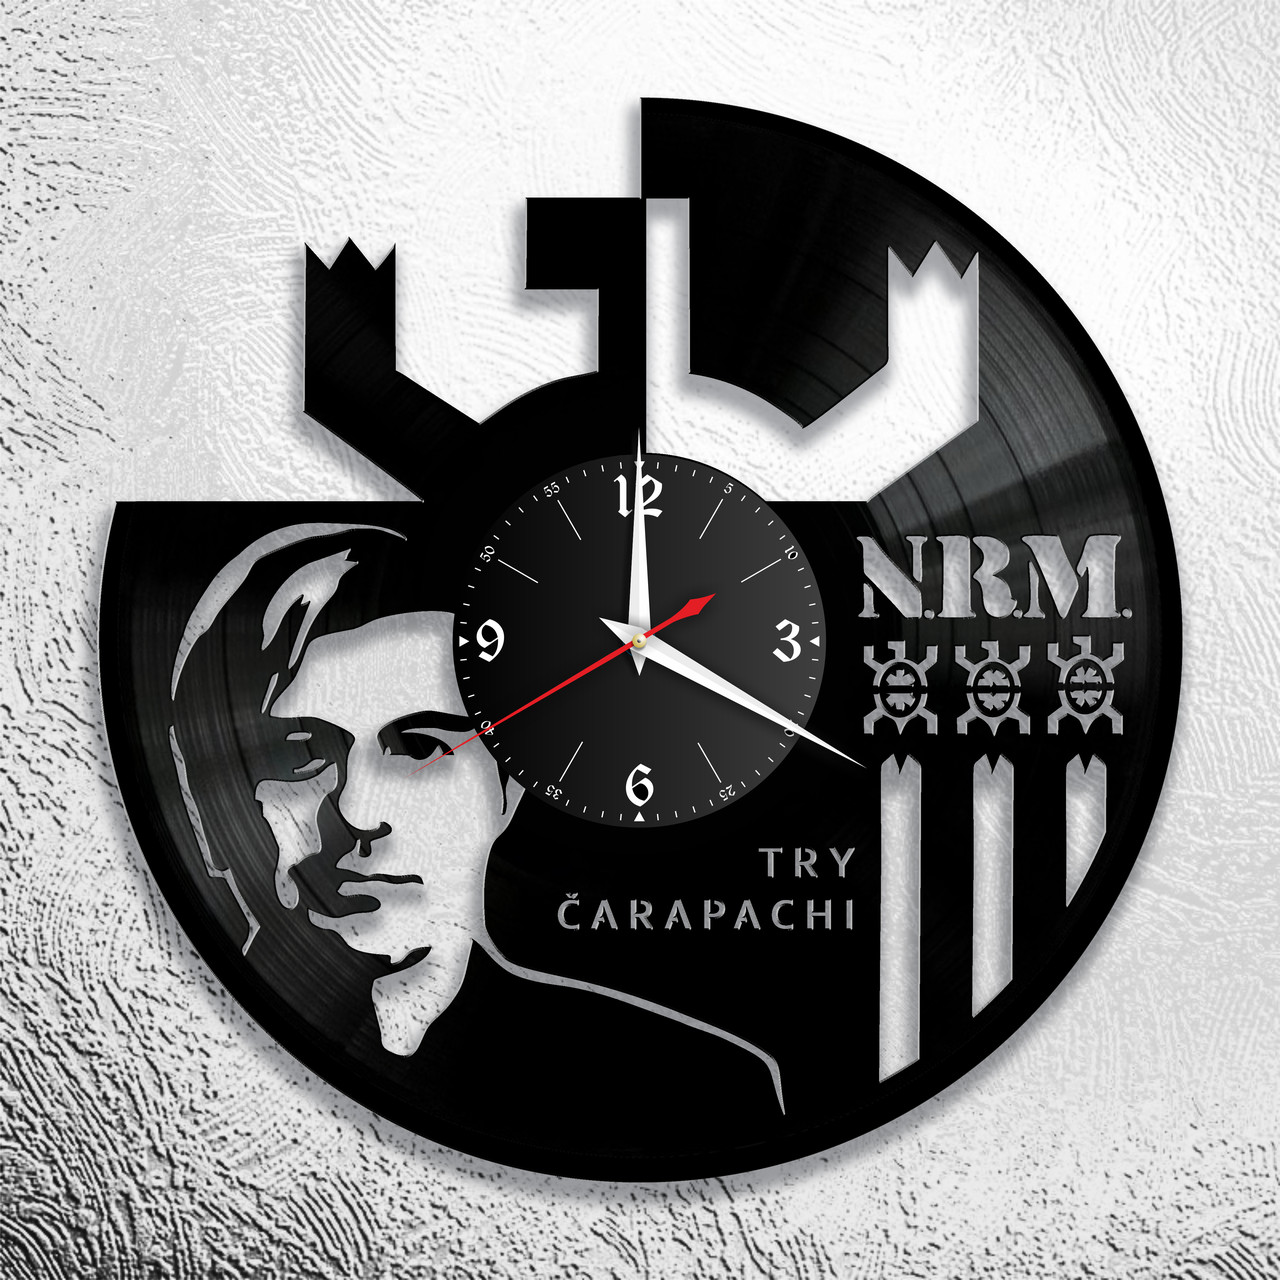 Оригинальные часы из виниловых пластинок "НРМ" версия 1, фото 1